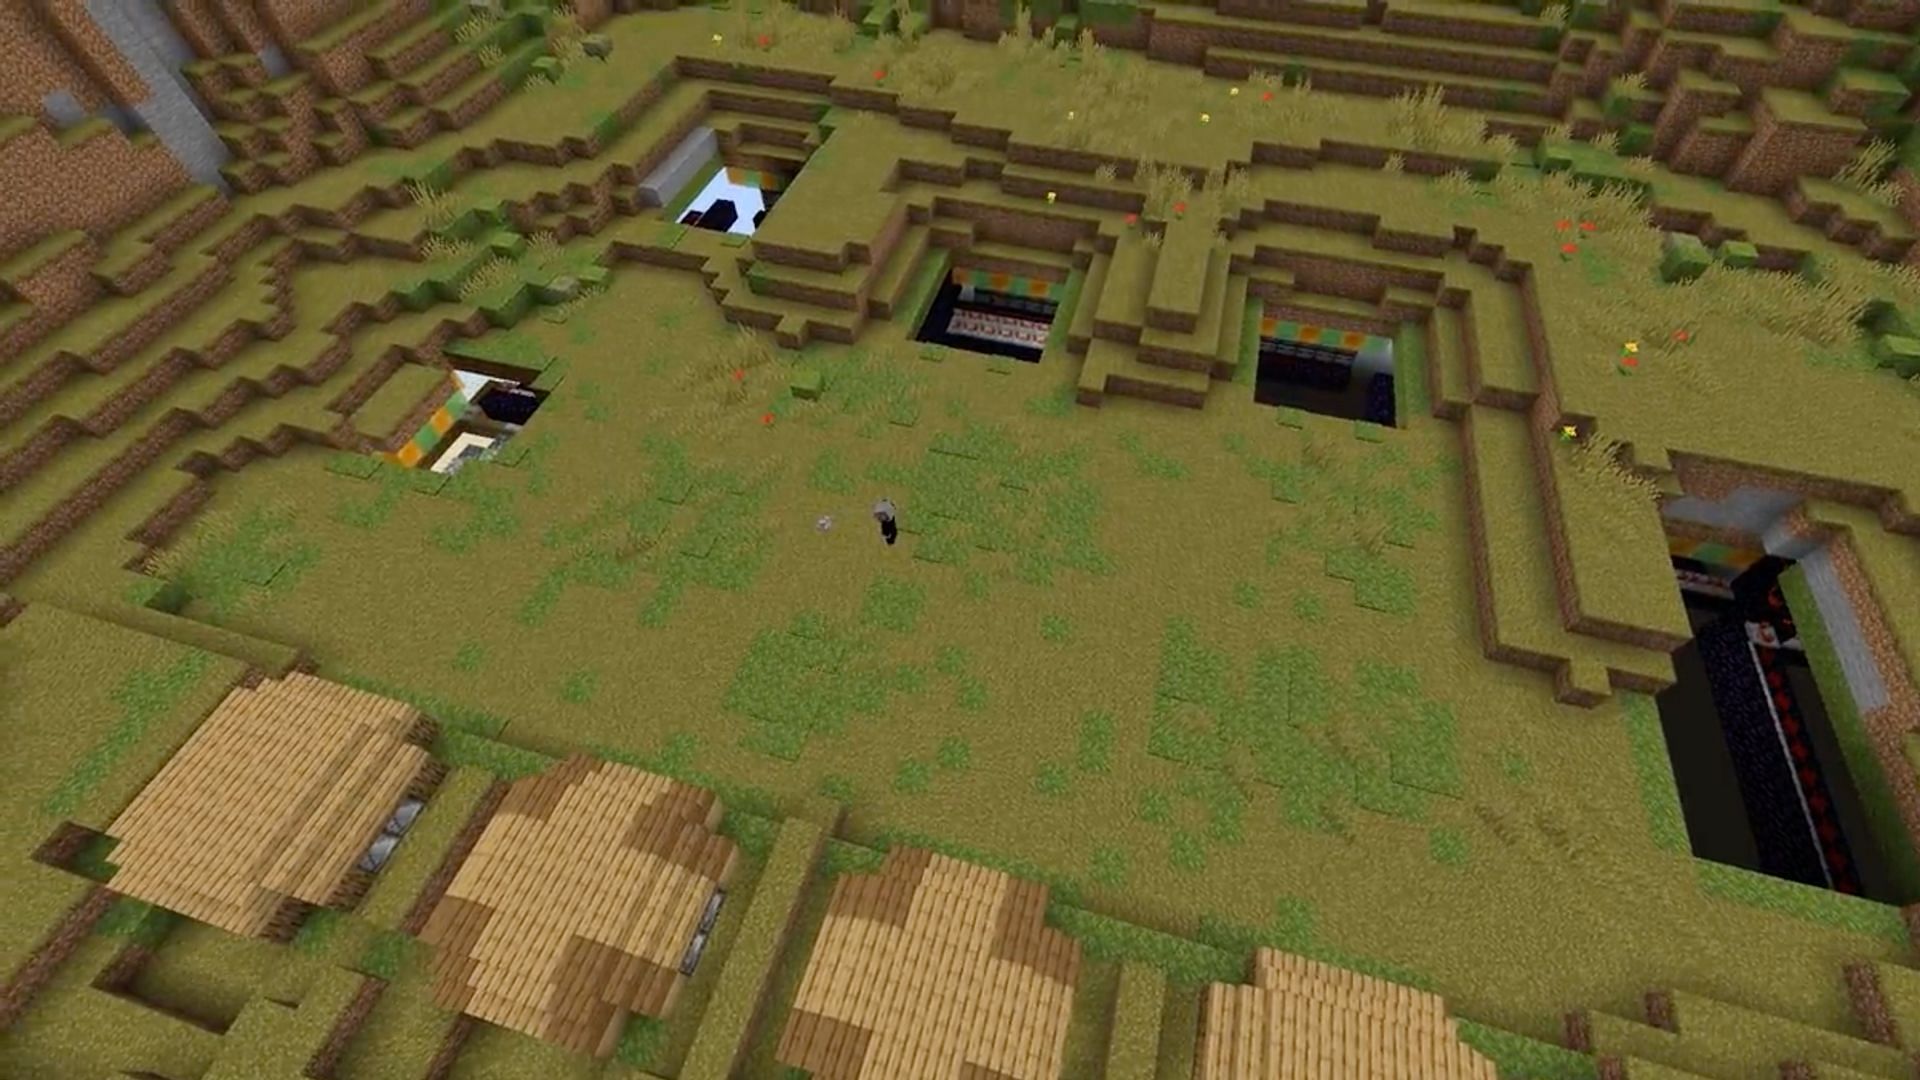 The hidden village emerges (Image via u/Alduit_Layter on Reddit)